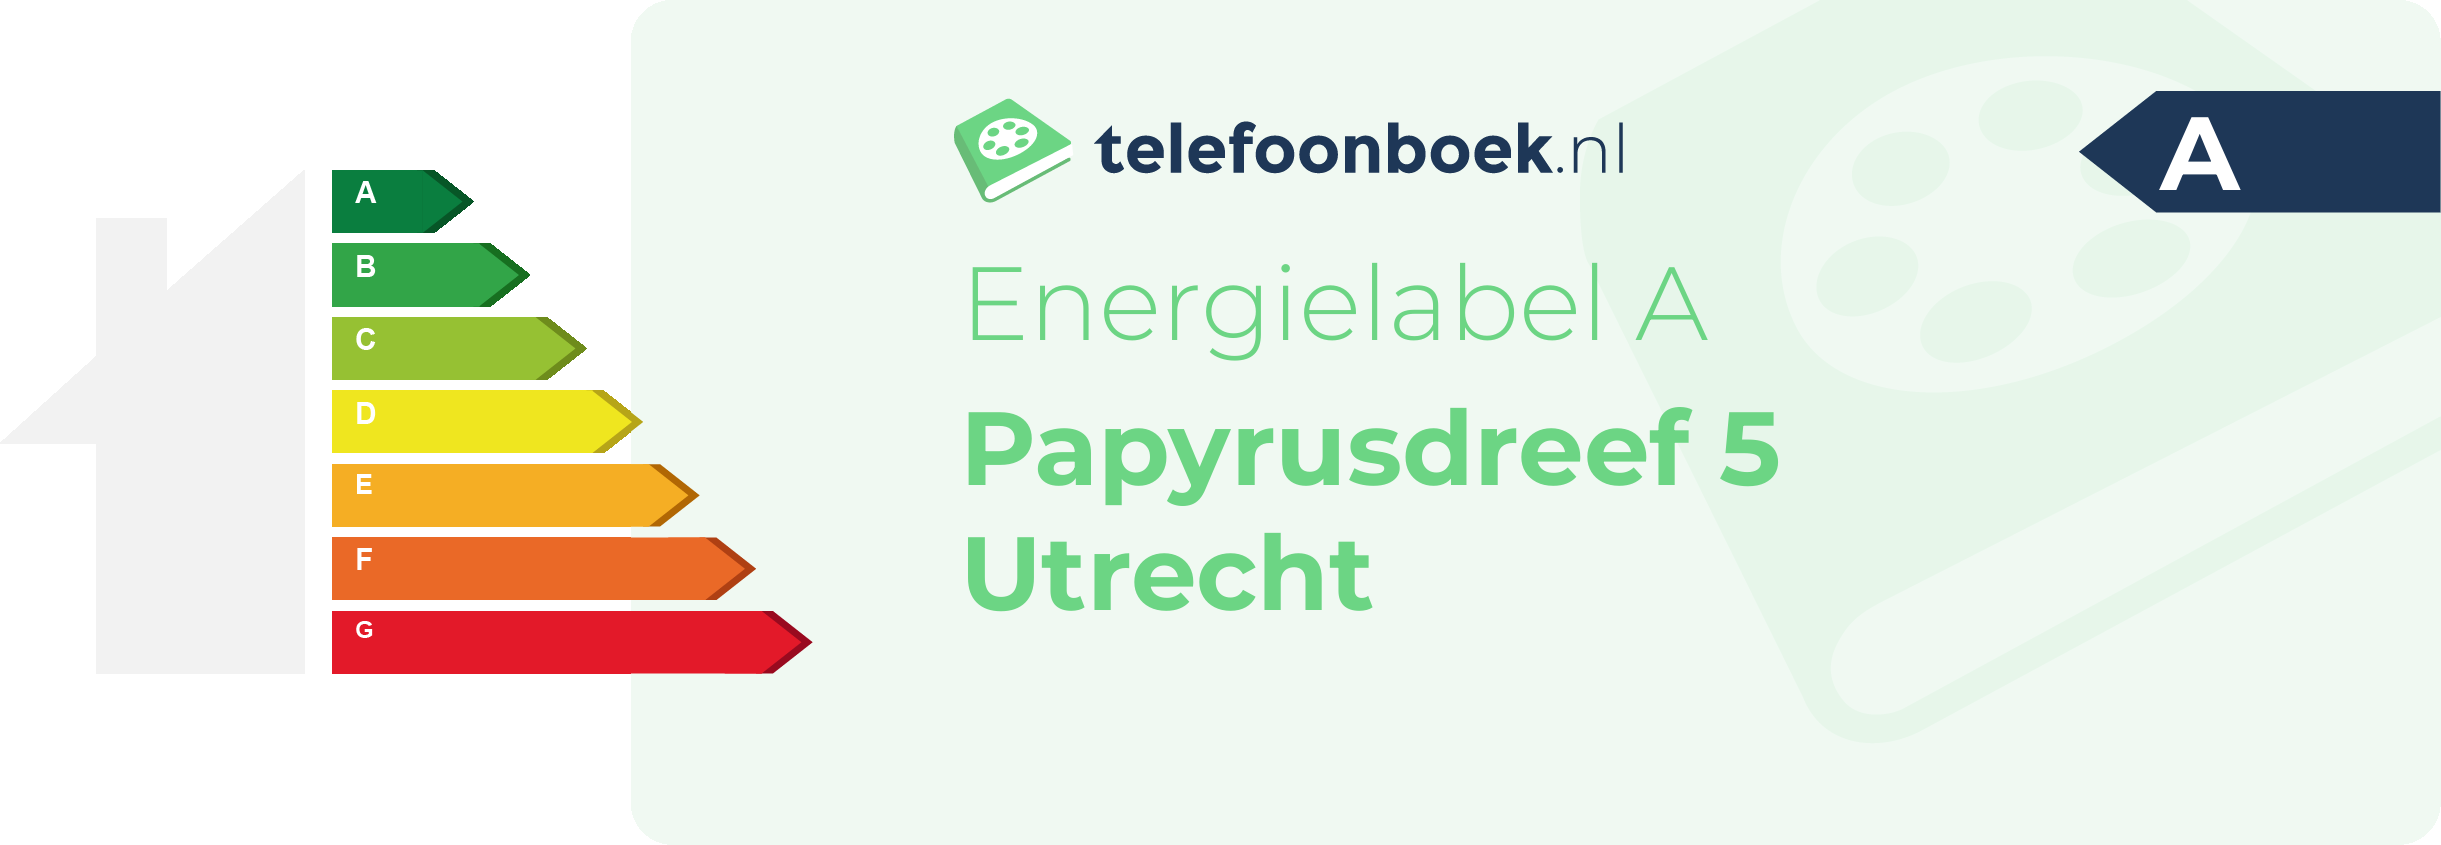 Energielabel Papyrusdreef 5 Utrecht